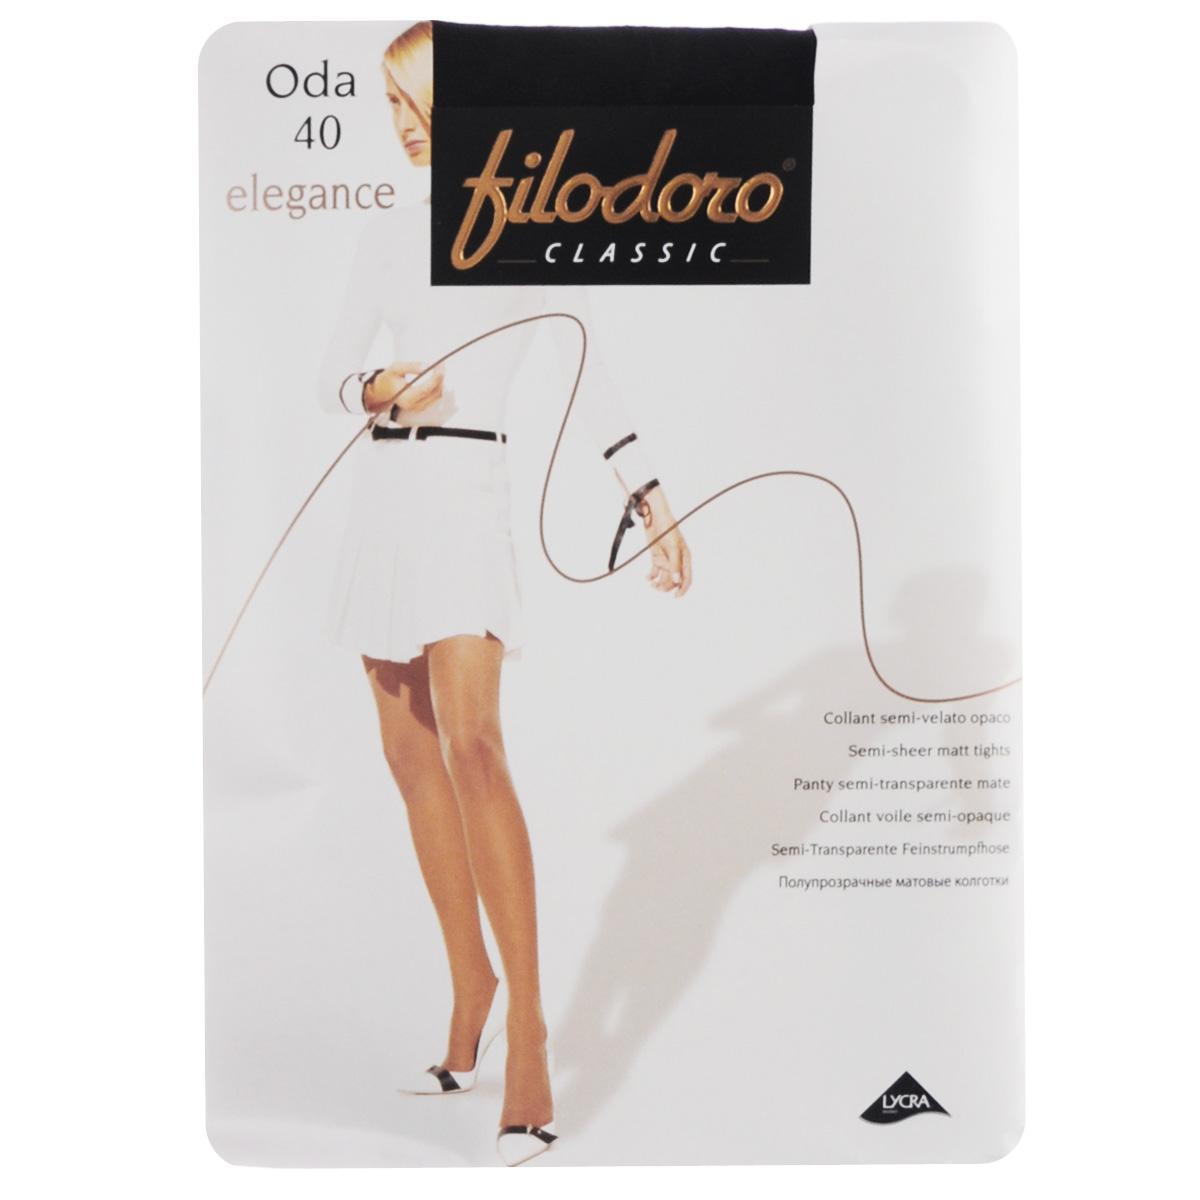 Колготки женские Filodoro Classic Oda 40 Elegance, цвет: Nero (черный). SSP-016659. Размер 4 (L)